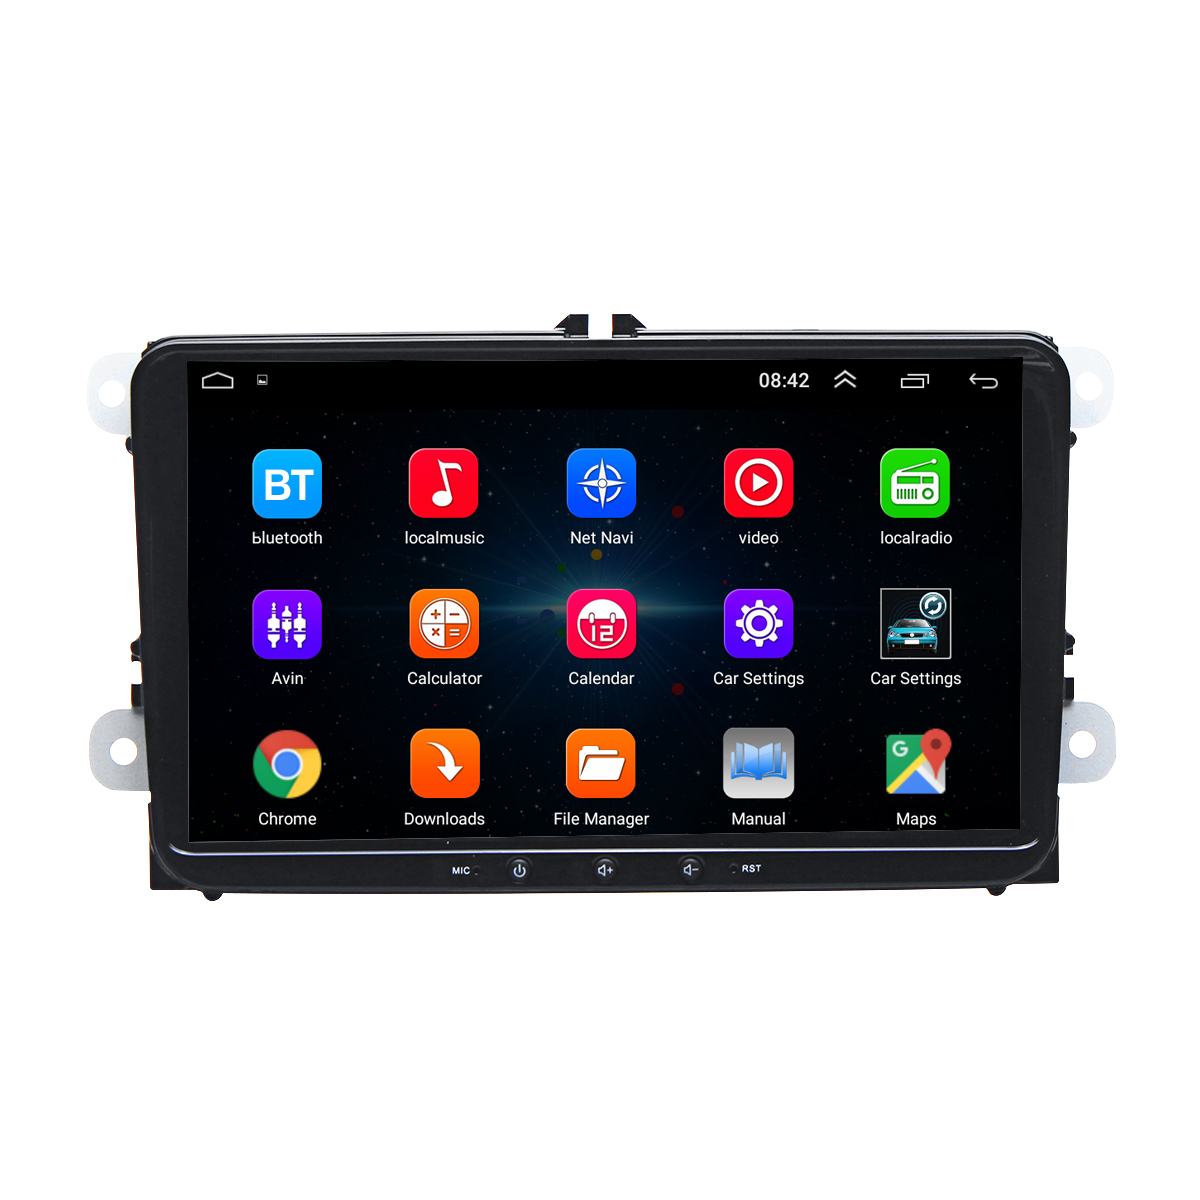 

9 дюймов 2 Din для Android 8.1 Авто Аудио стерео мультимедийный проигрыватель Quad Core 1 + 16G GPS Сенсорный экран Bluetooth Wifi FM Встроенный Микрофон Для VW Skoda Se